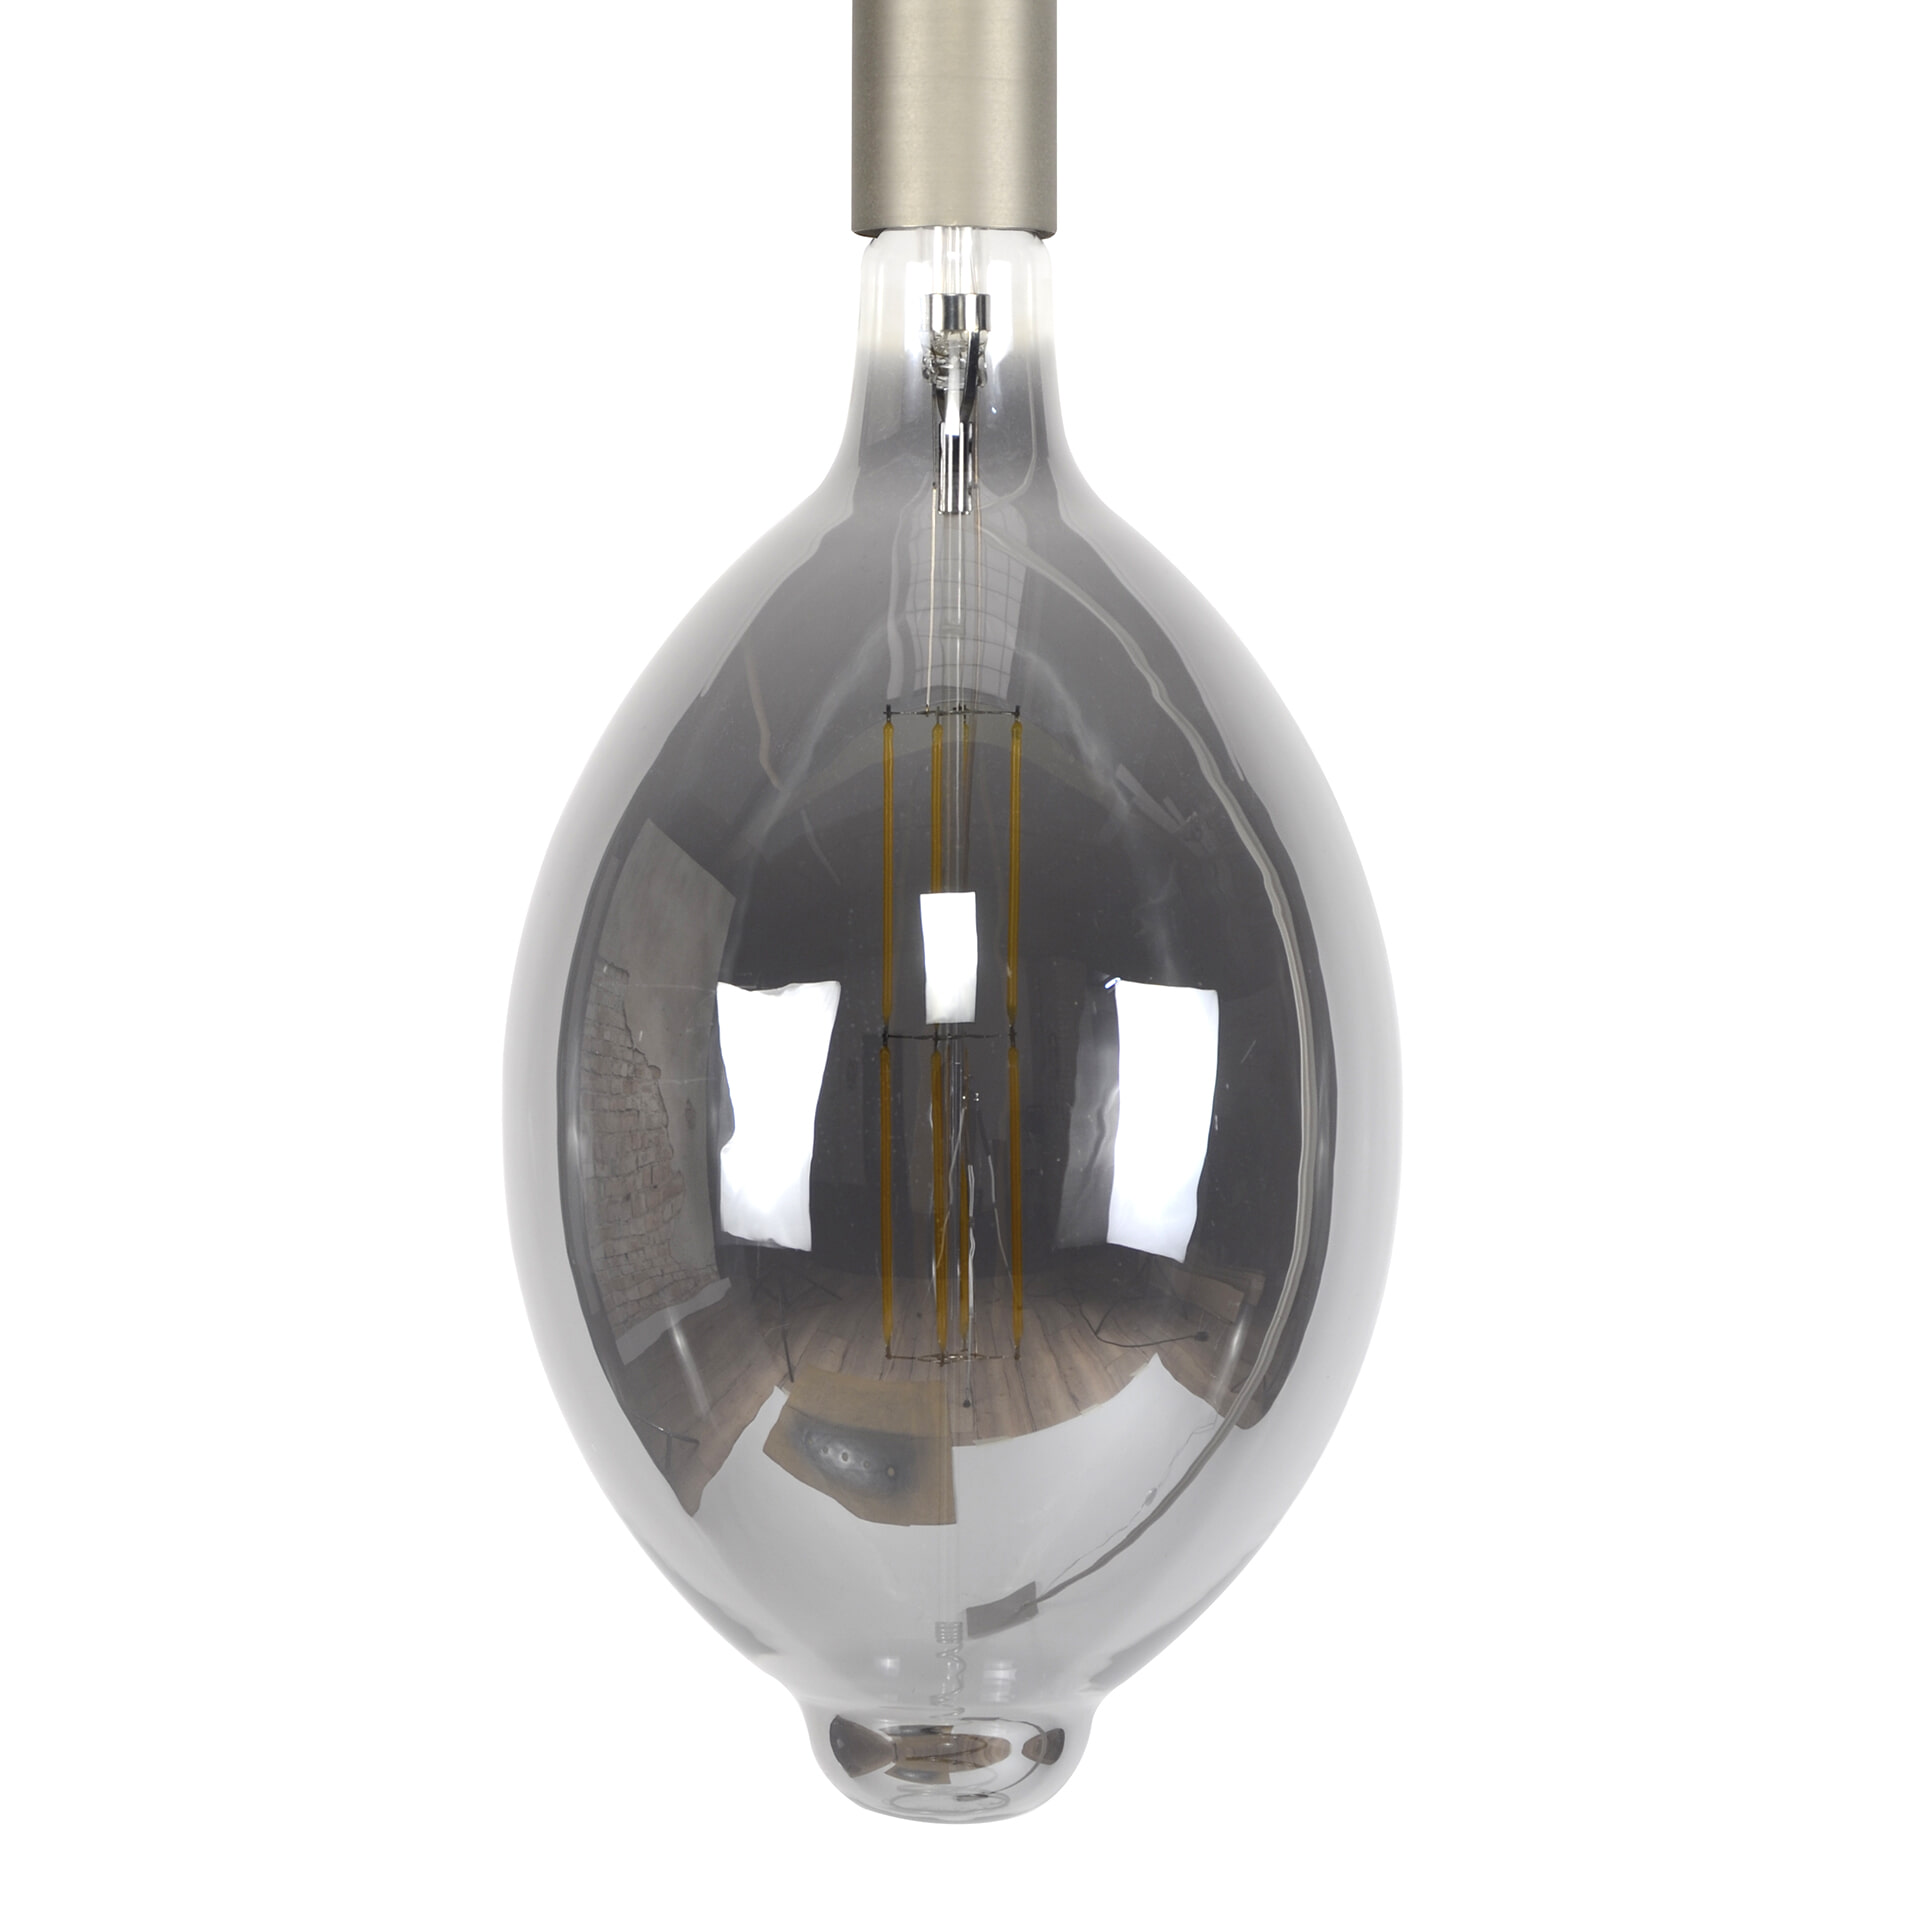 Kooldraadlamp 'Lain' E27 LED 8W, kleur Smoke Grey, dimbaar